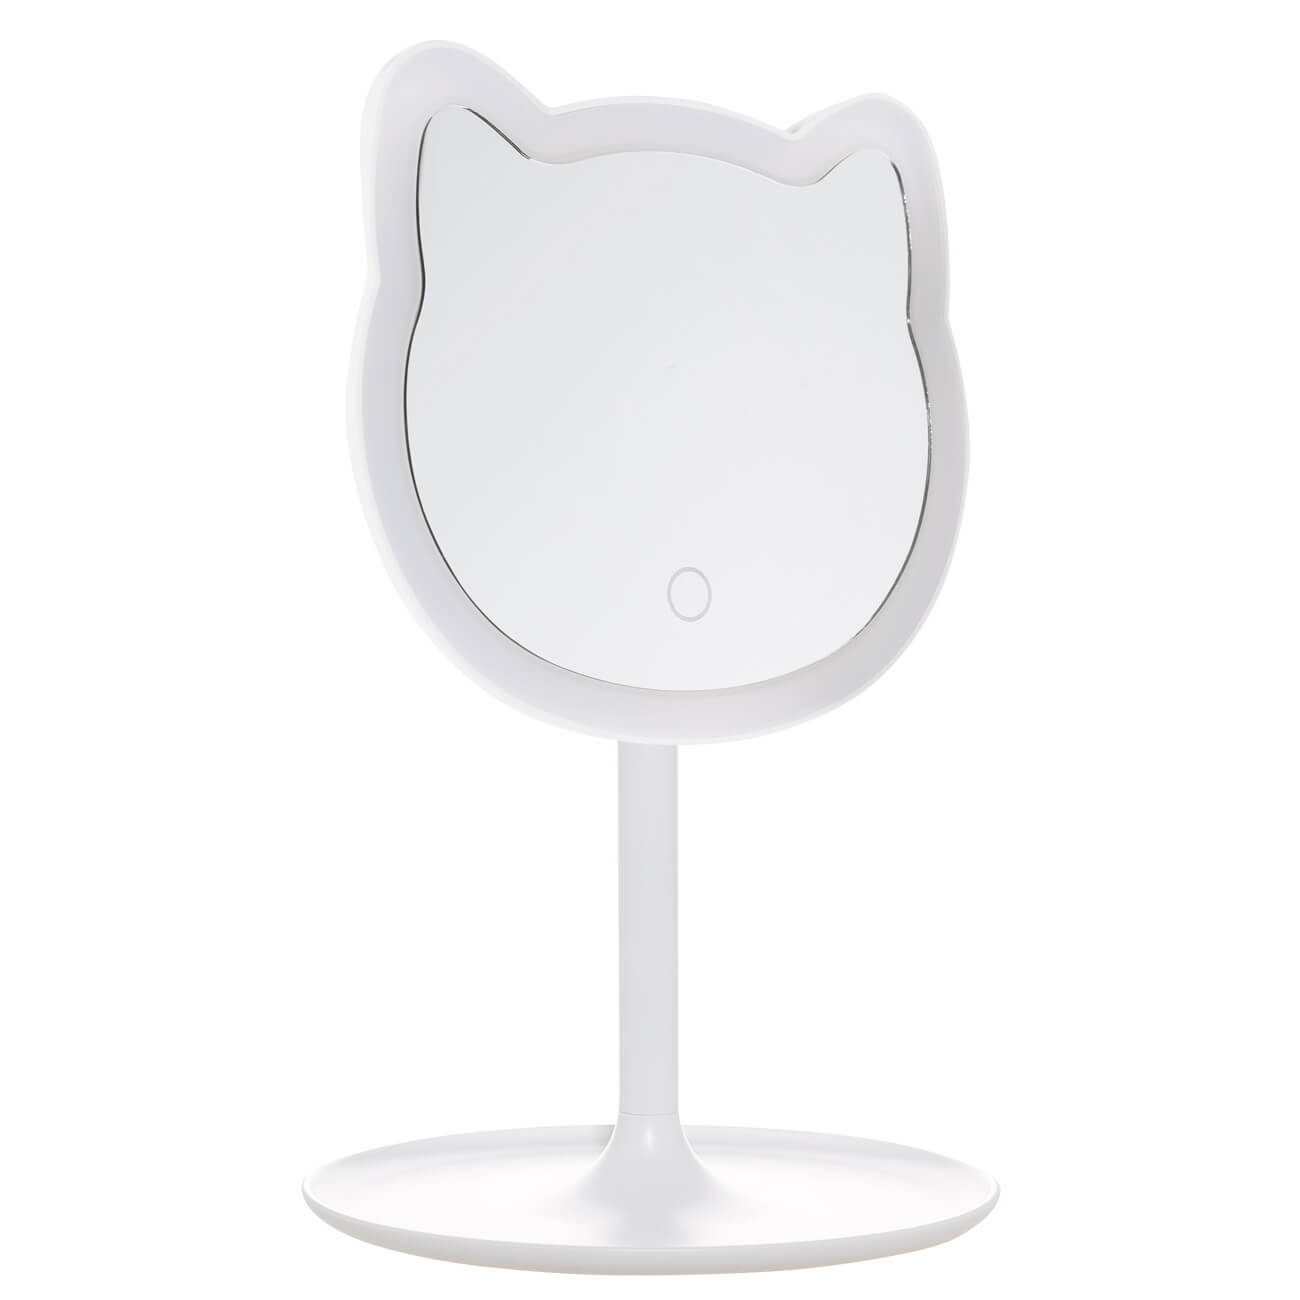 Зеркало настольное, 29 см, с подсветкой, на подставке, пластик, белое, Кот, Cat зеркало настольное на подставке круглое с увеличением 8 frap f6208